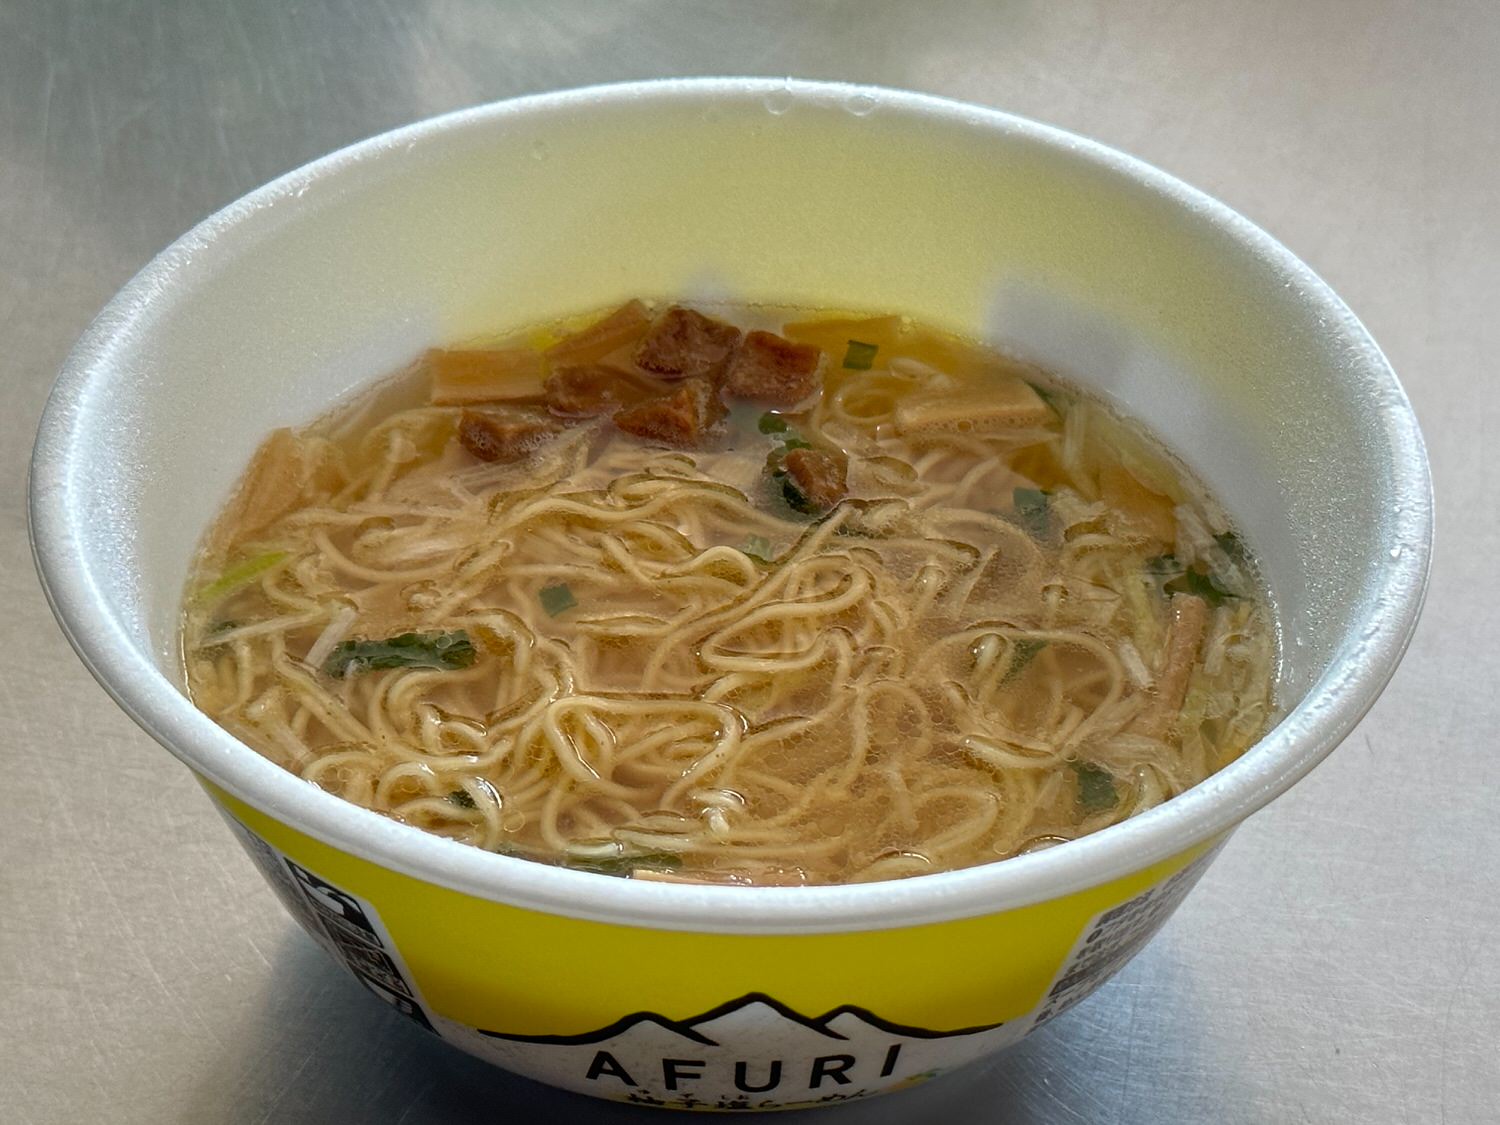 AFURI 柚子塩らーめん カップ麺 018 01